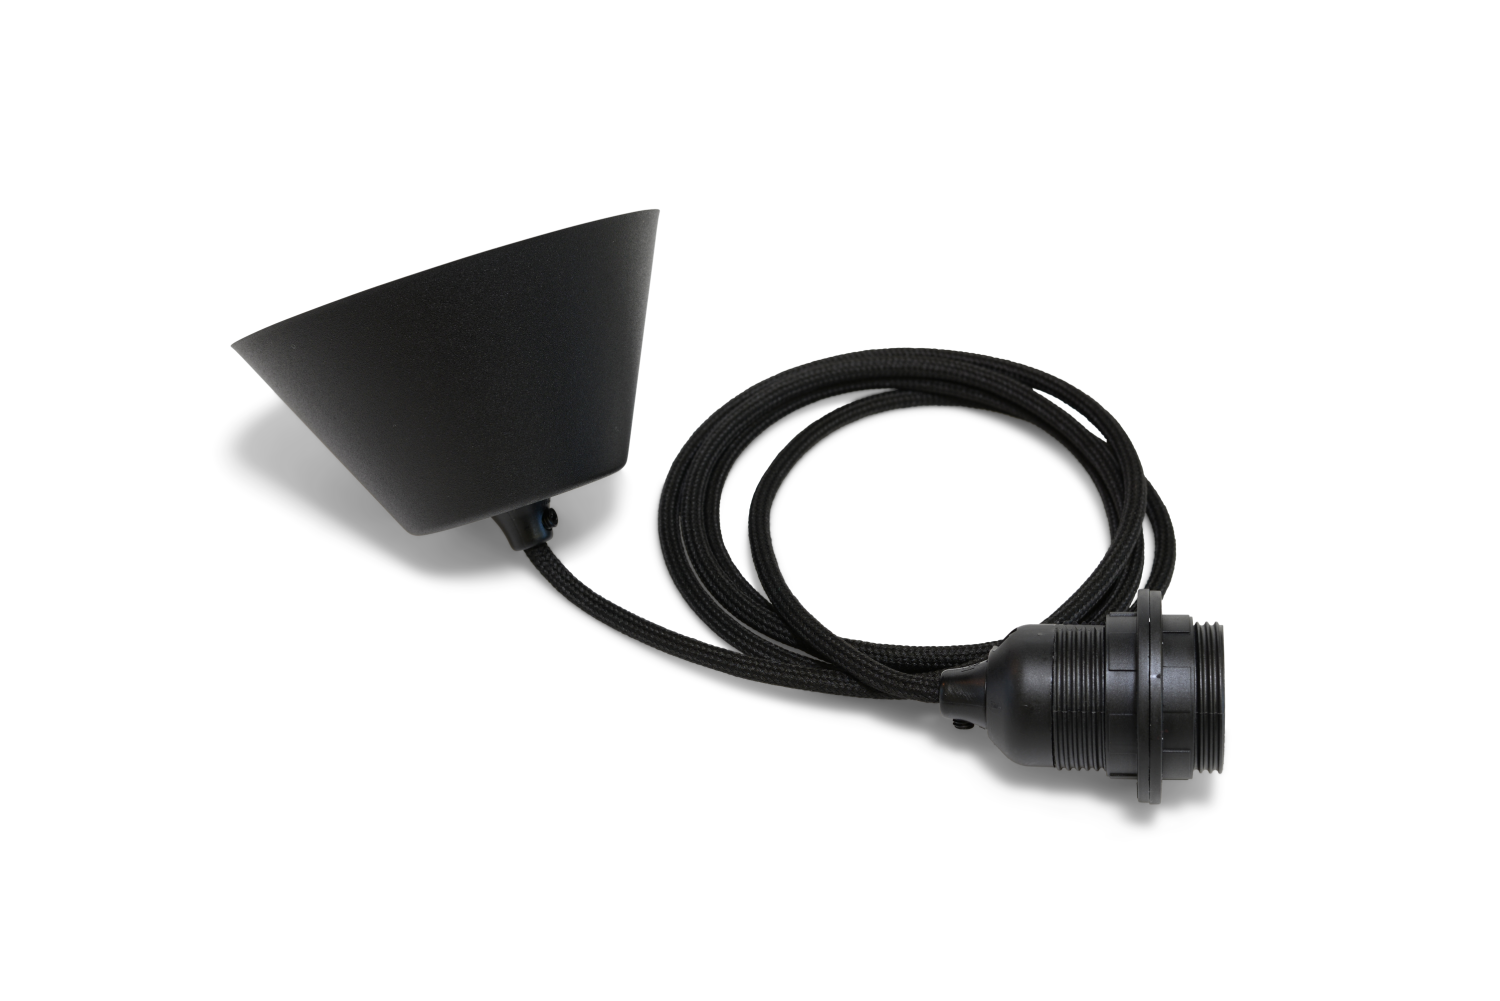 Lampupphäng textil svart TT-09, 2m